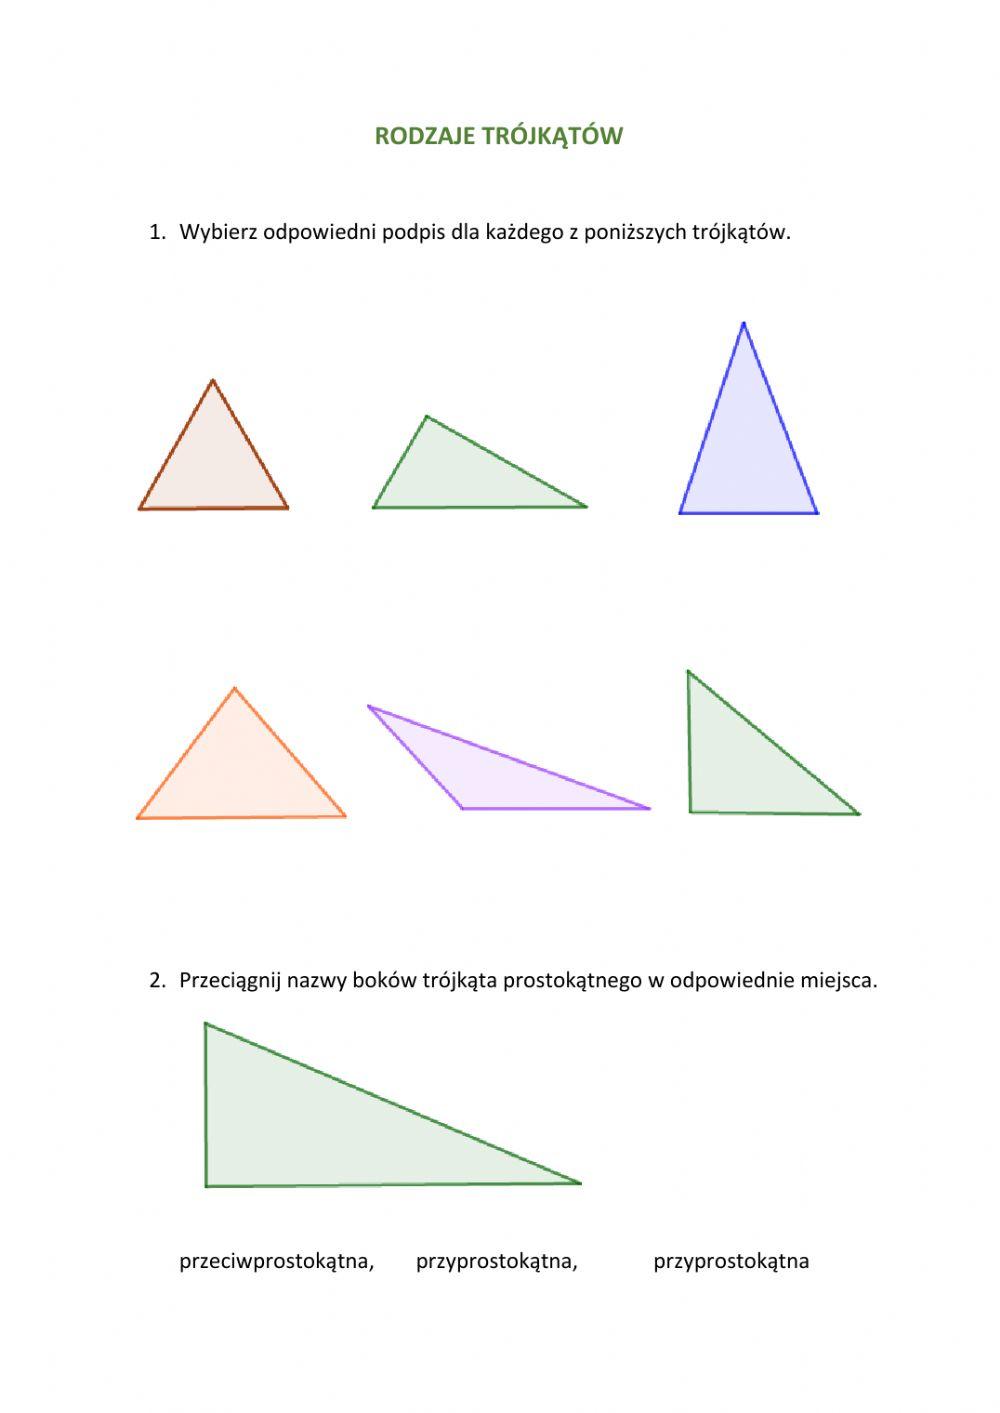 Rodzaje trójkątów